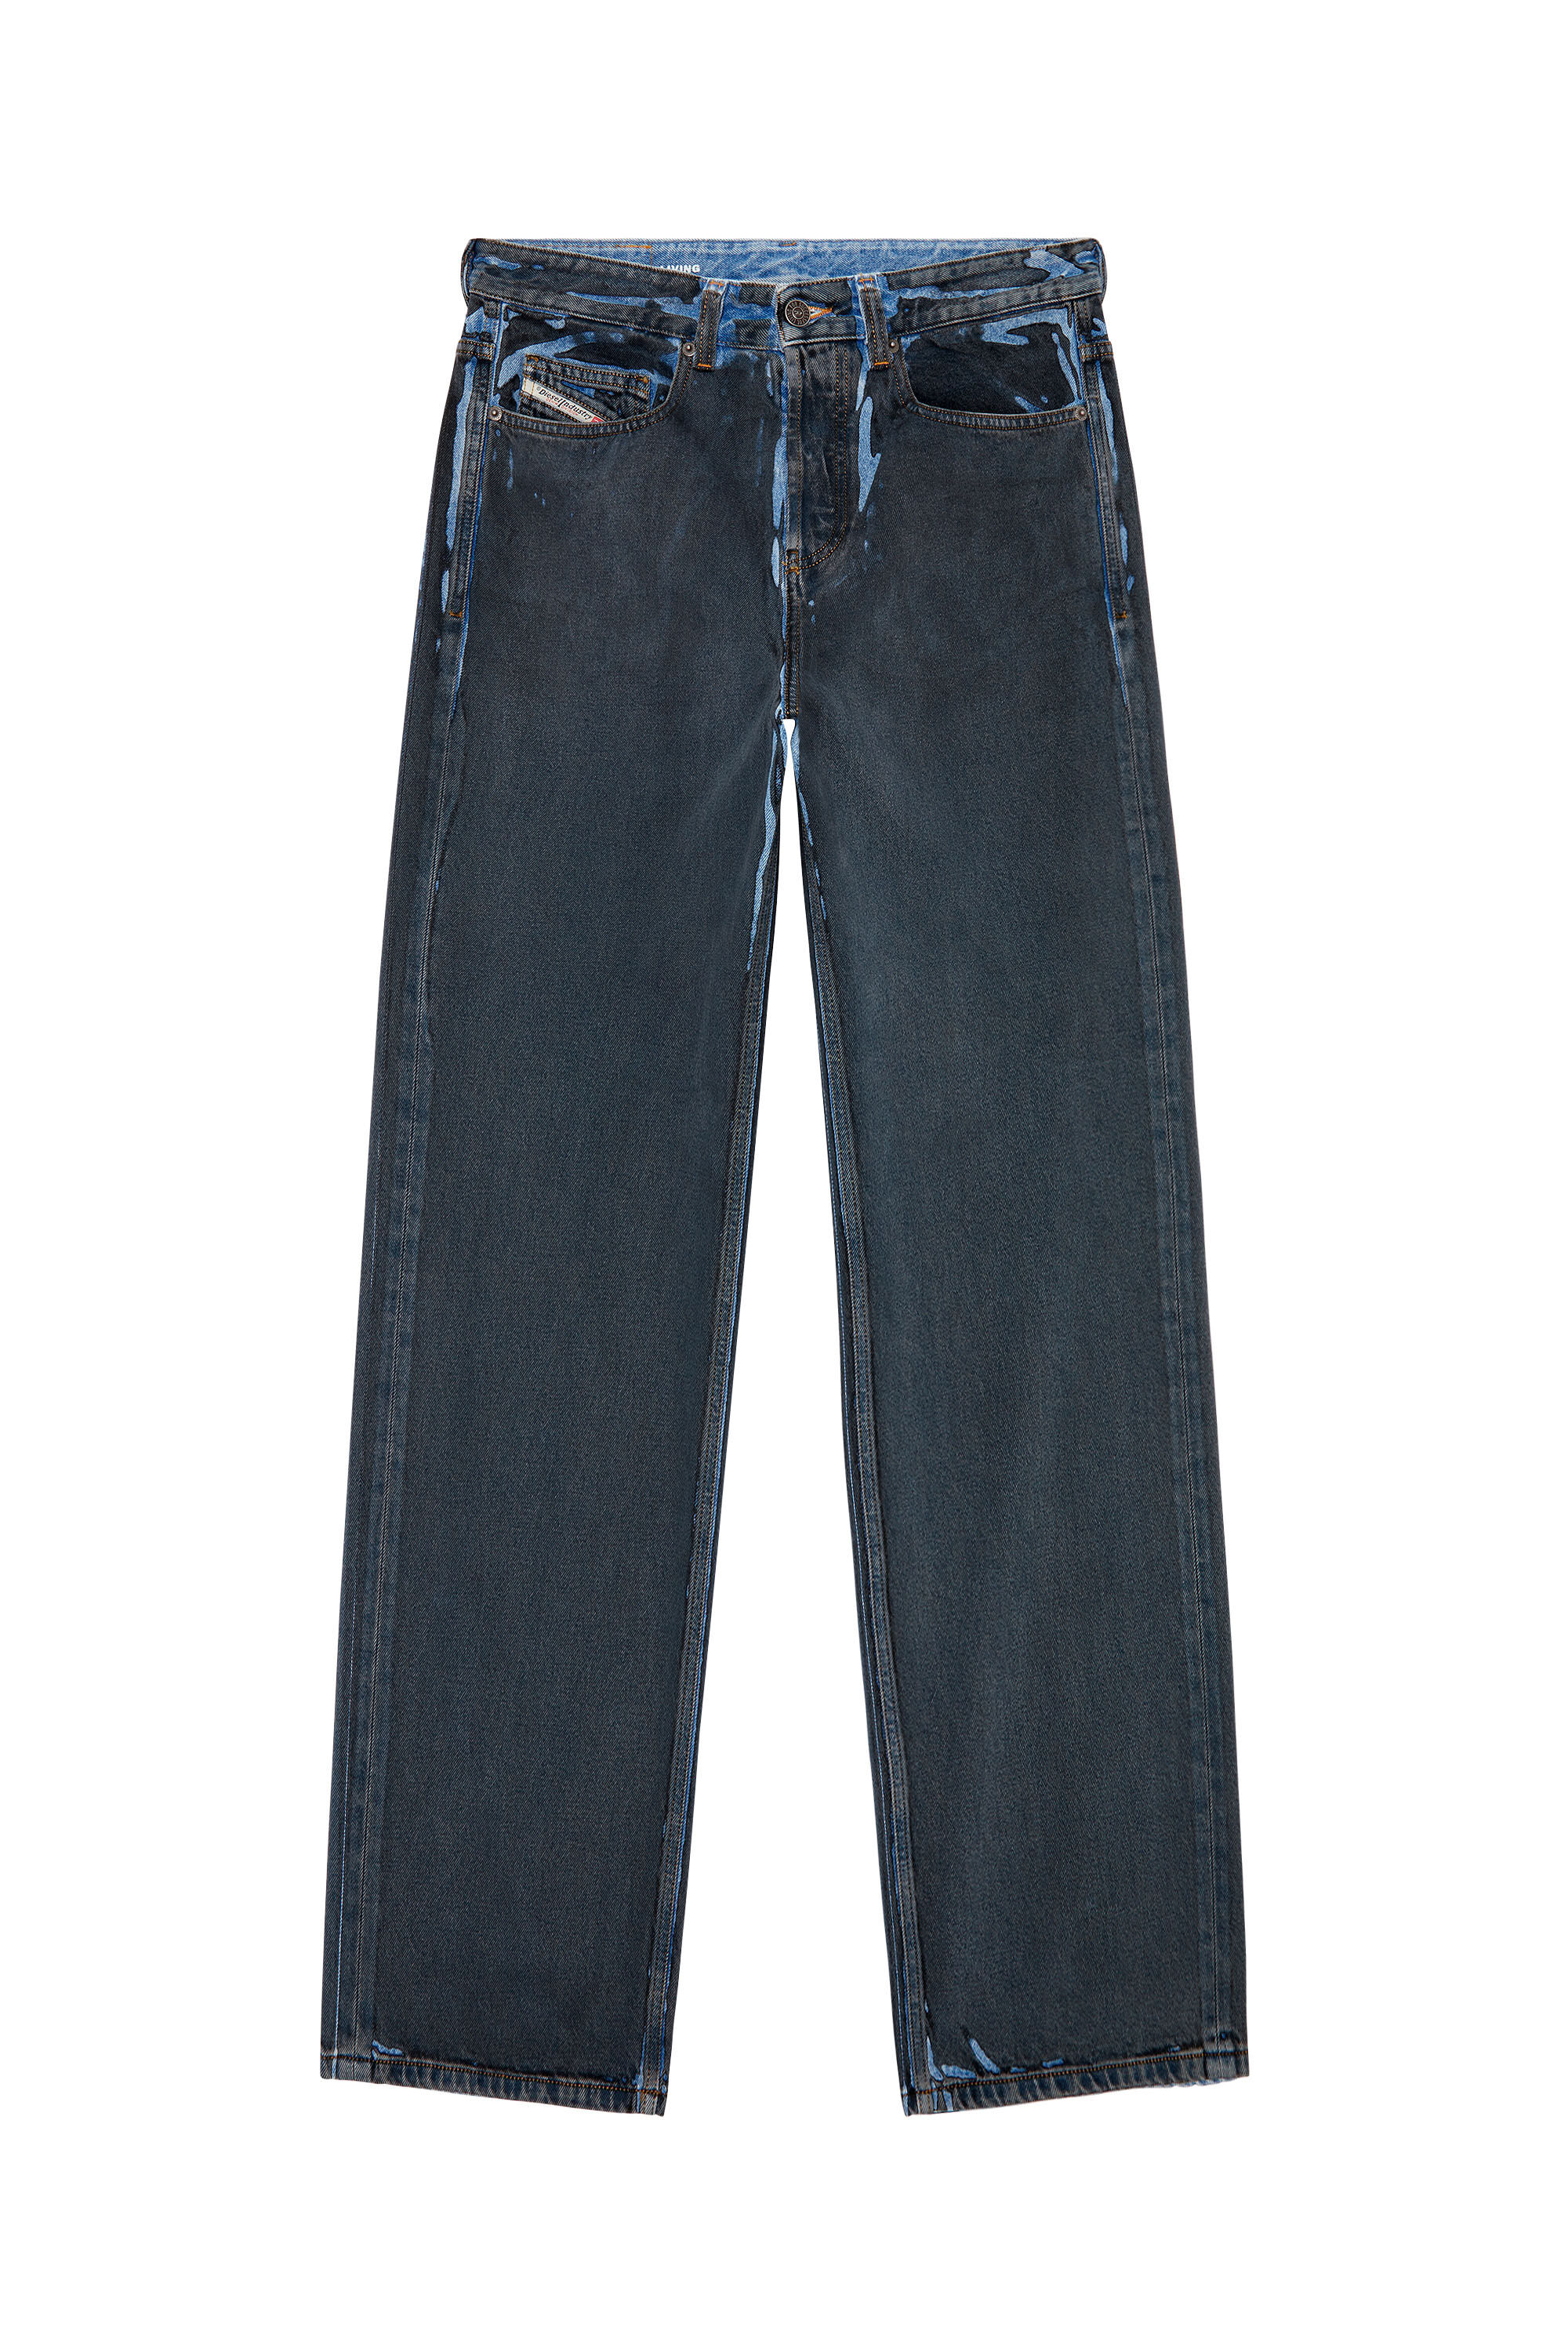 Diesel - Man Straight Jeans 2001 D-Macro 09I47, Black/Dark grey - Image 2